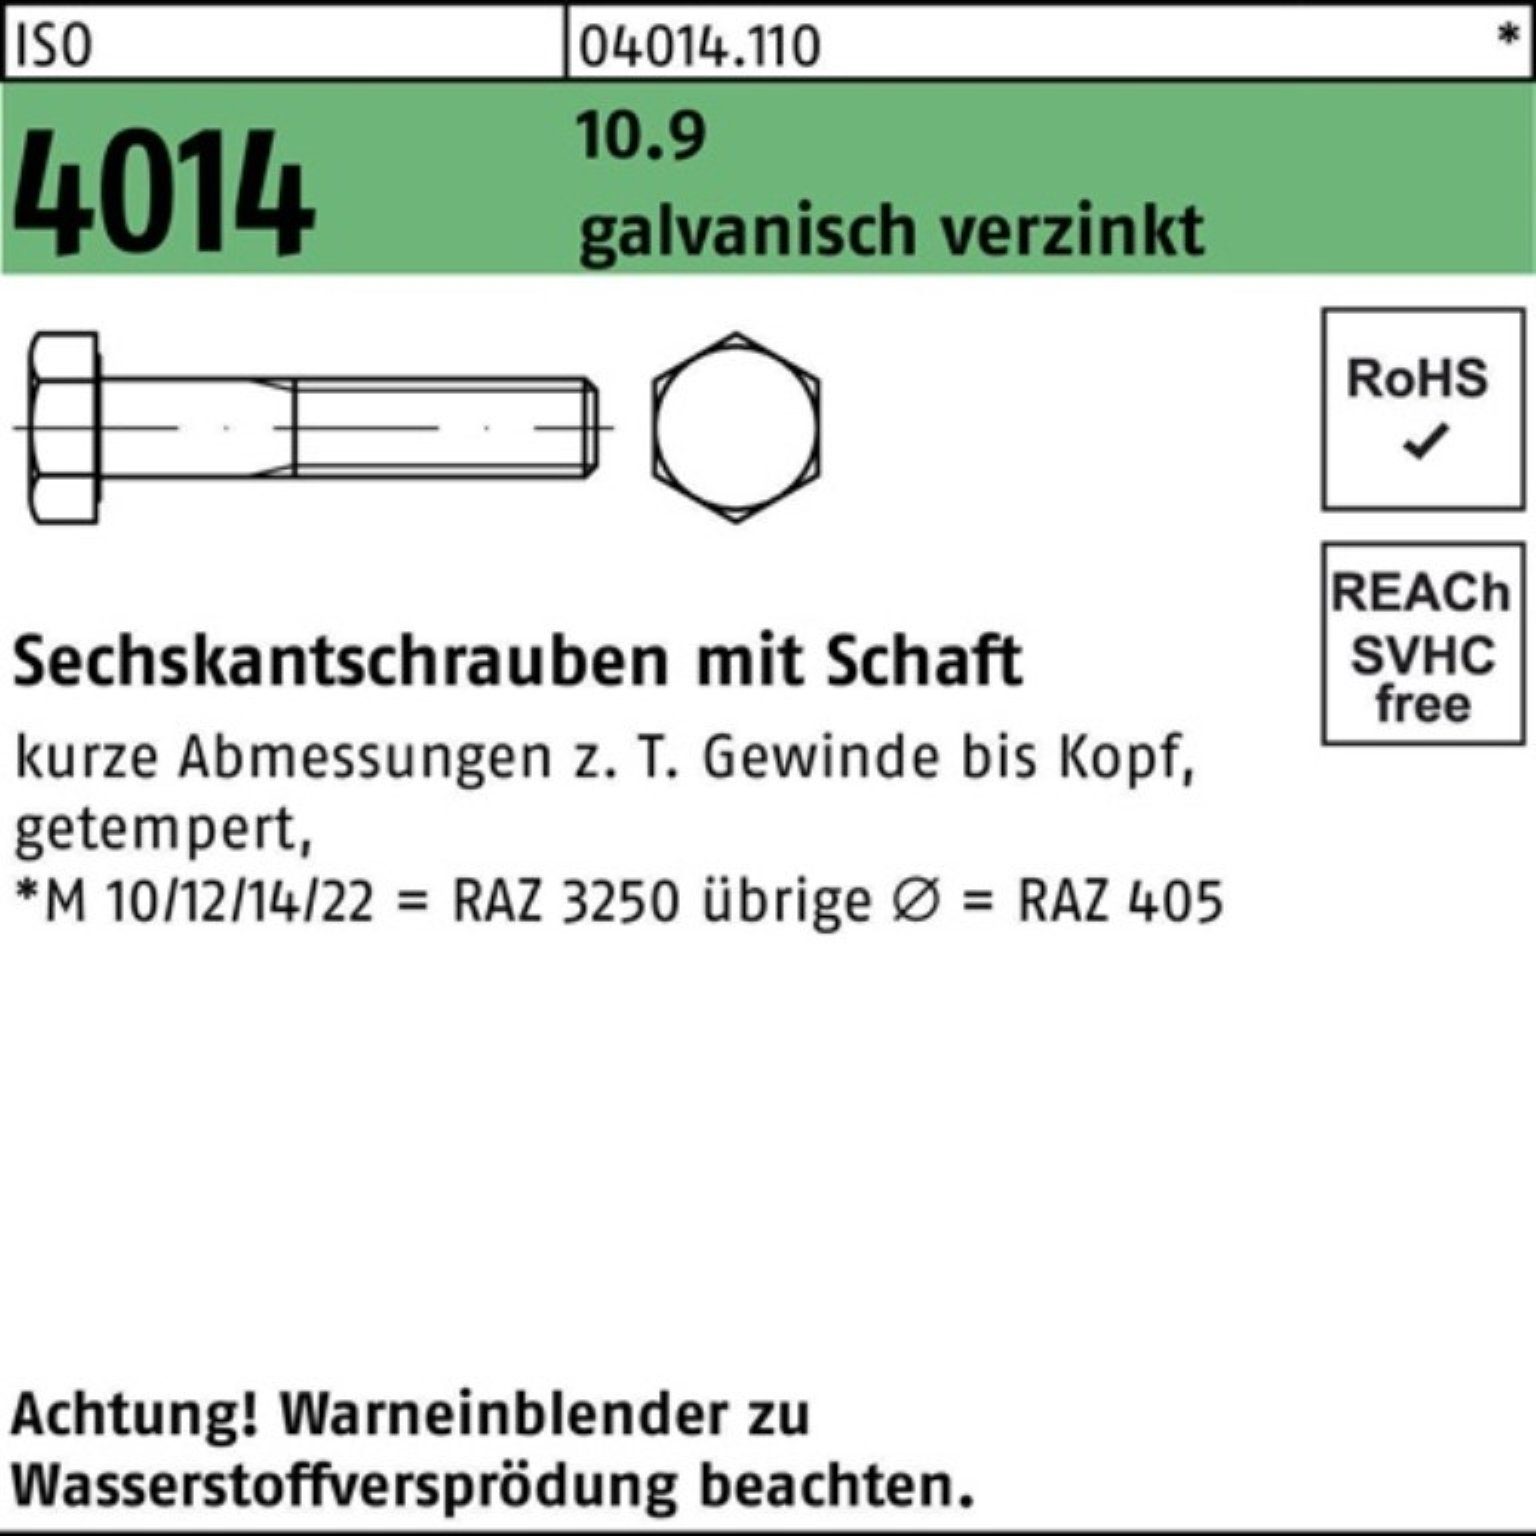 Schaft Sechskantschraube 10.9 Pack ISO 210 galv.verz. 4014 100er Bufab Sechskantschraube M16x